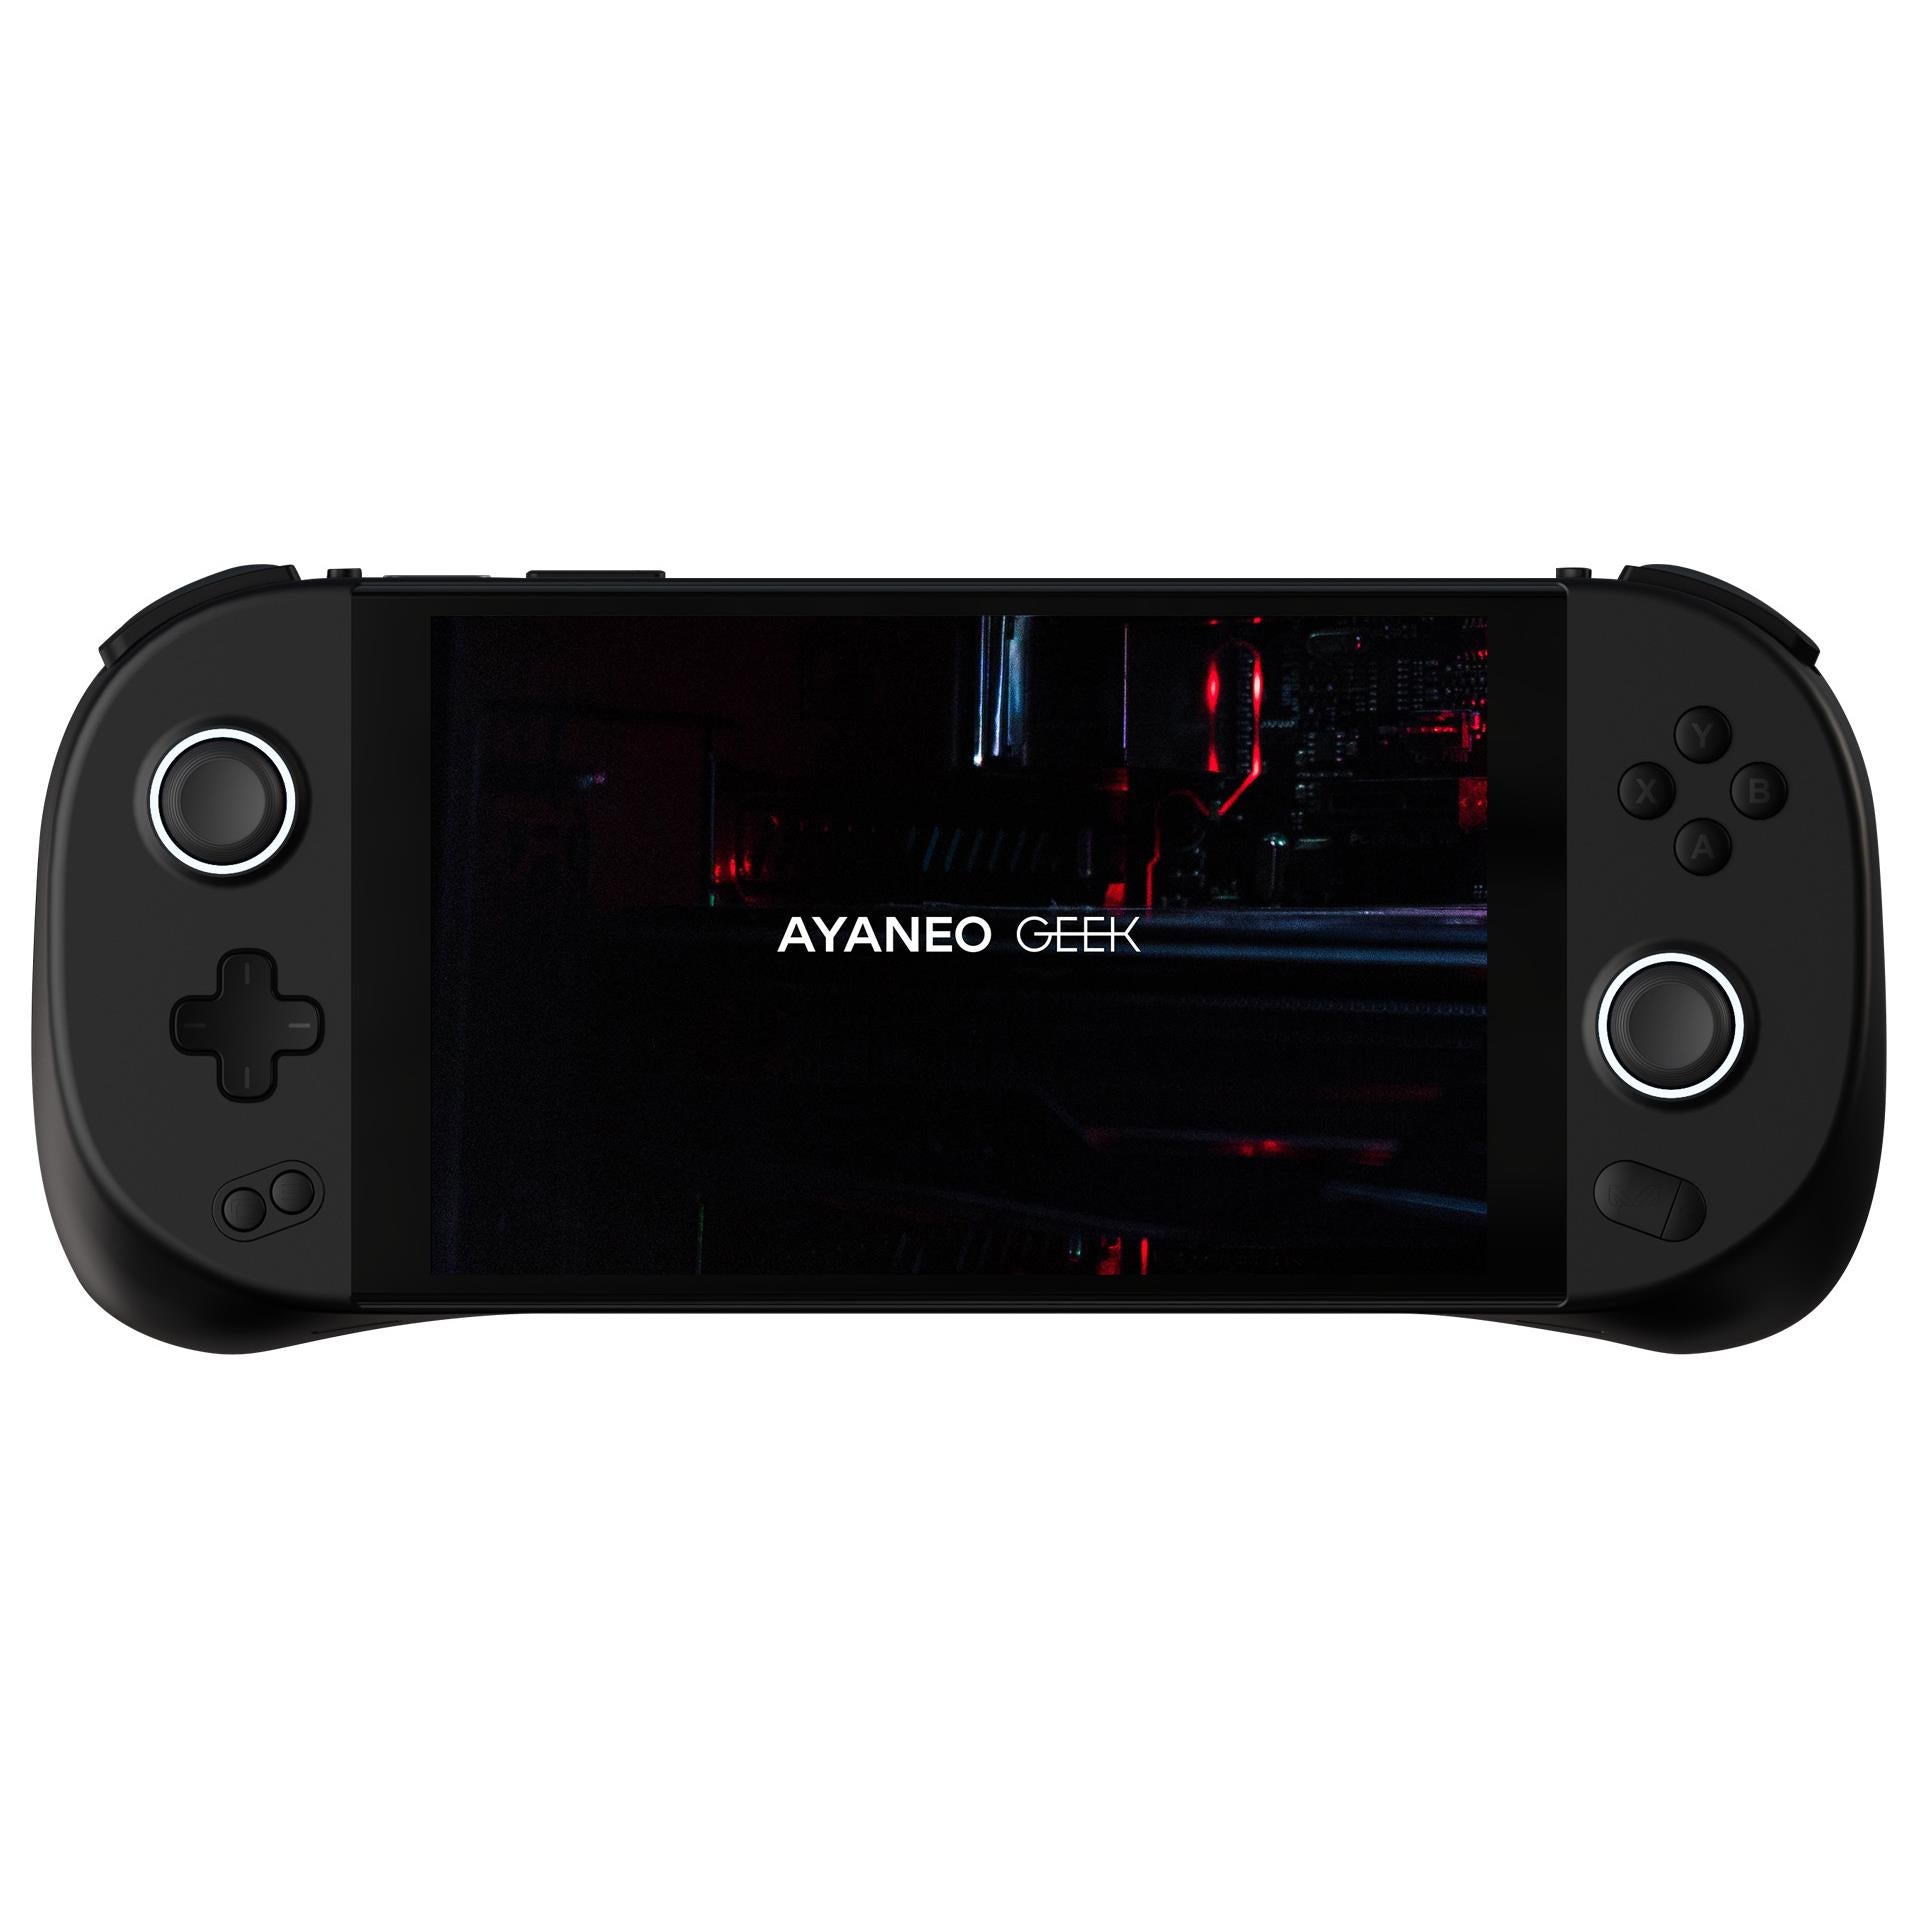 ayaneo geek handheld gaming console (fantasy black)